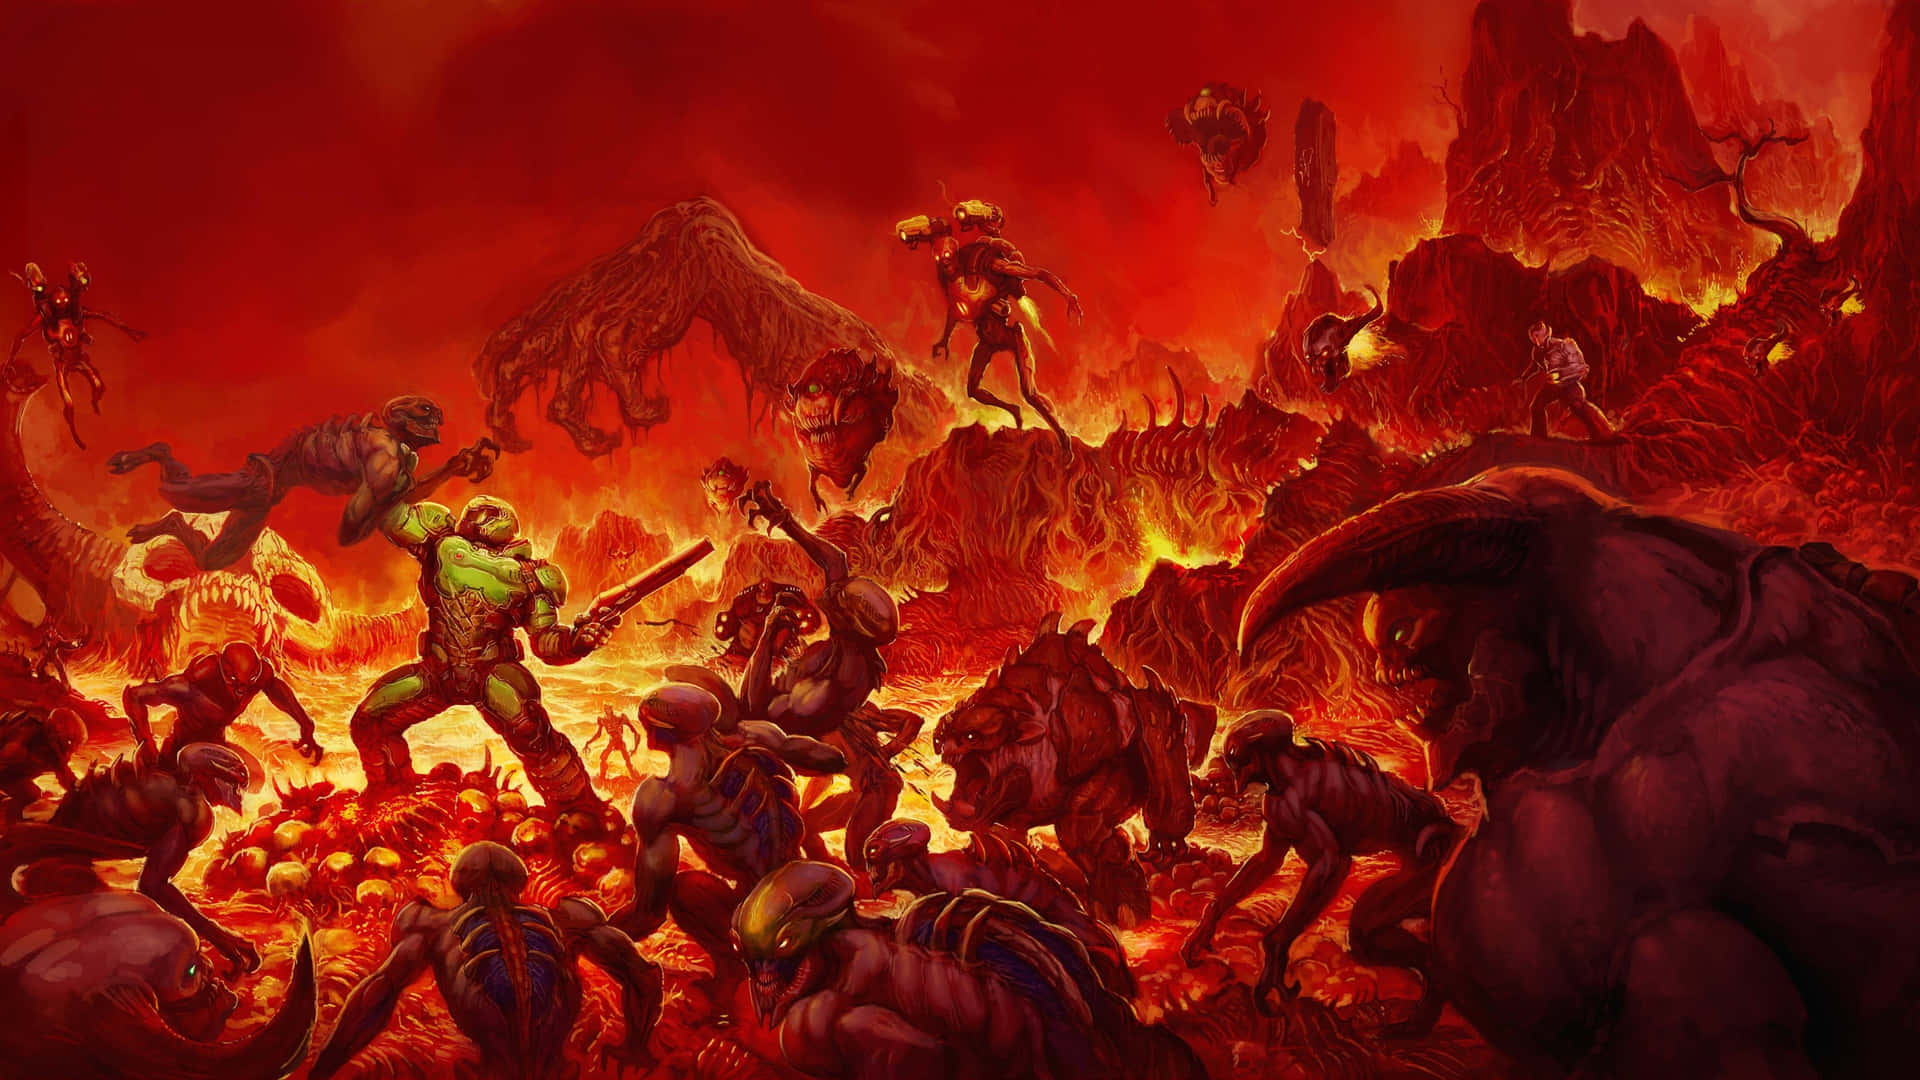 A View Of Doom Eternal's Intense 4k Battle